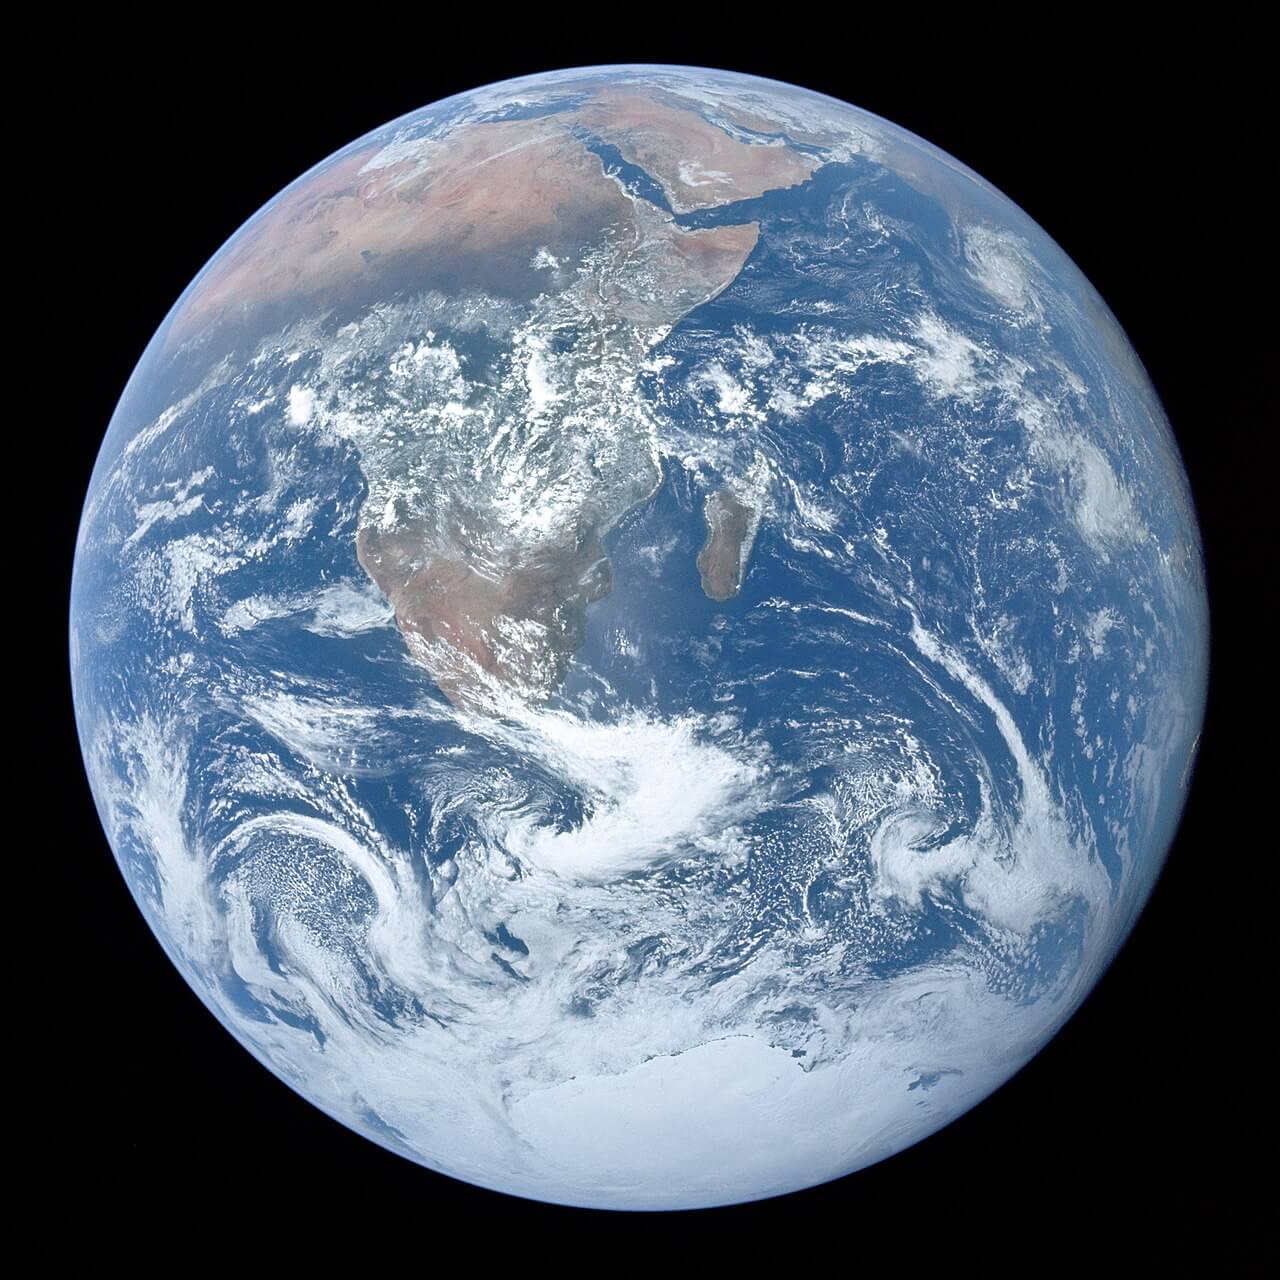 Die Erdkugel aufgenommen aus dem Weltall.
Quelle: https://de.wikipedia.org/wiki/Erde